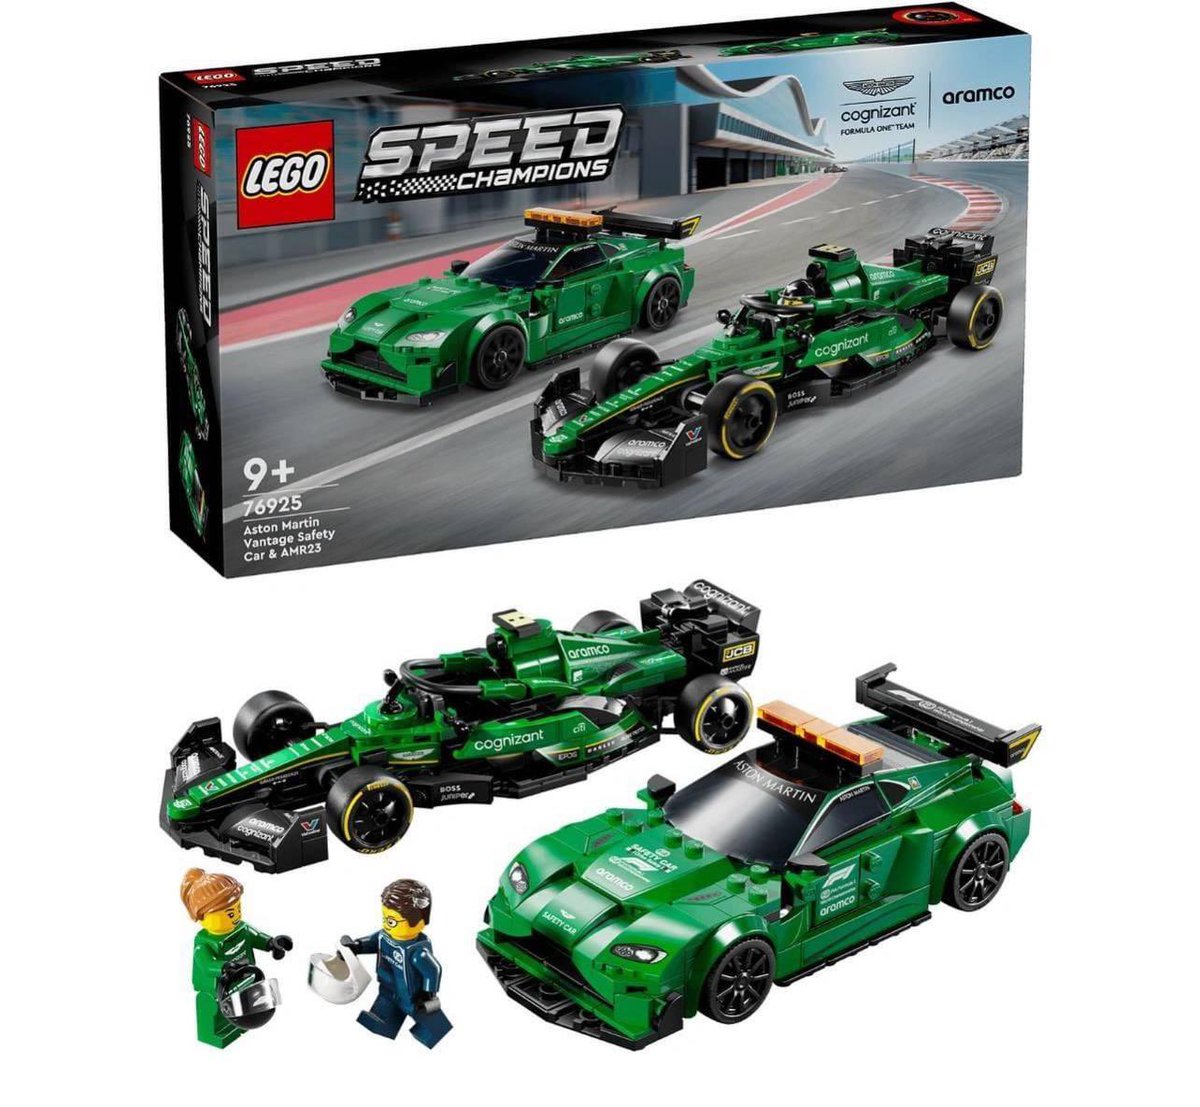 Lego zapowiedziało oficjalny set Speed Champions z Astonami. Wygląda całkiem  fajnie jak na takie małe modele, szkoda że nie będzie jako figurka Alonso czy Stroll. 

Na oficjalnej  stronie lego, taki set kosztuje 240zł.

#F1PL #ViaF1 #F1News